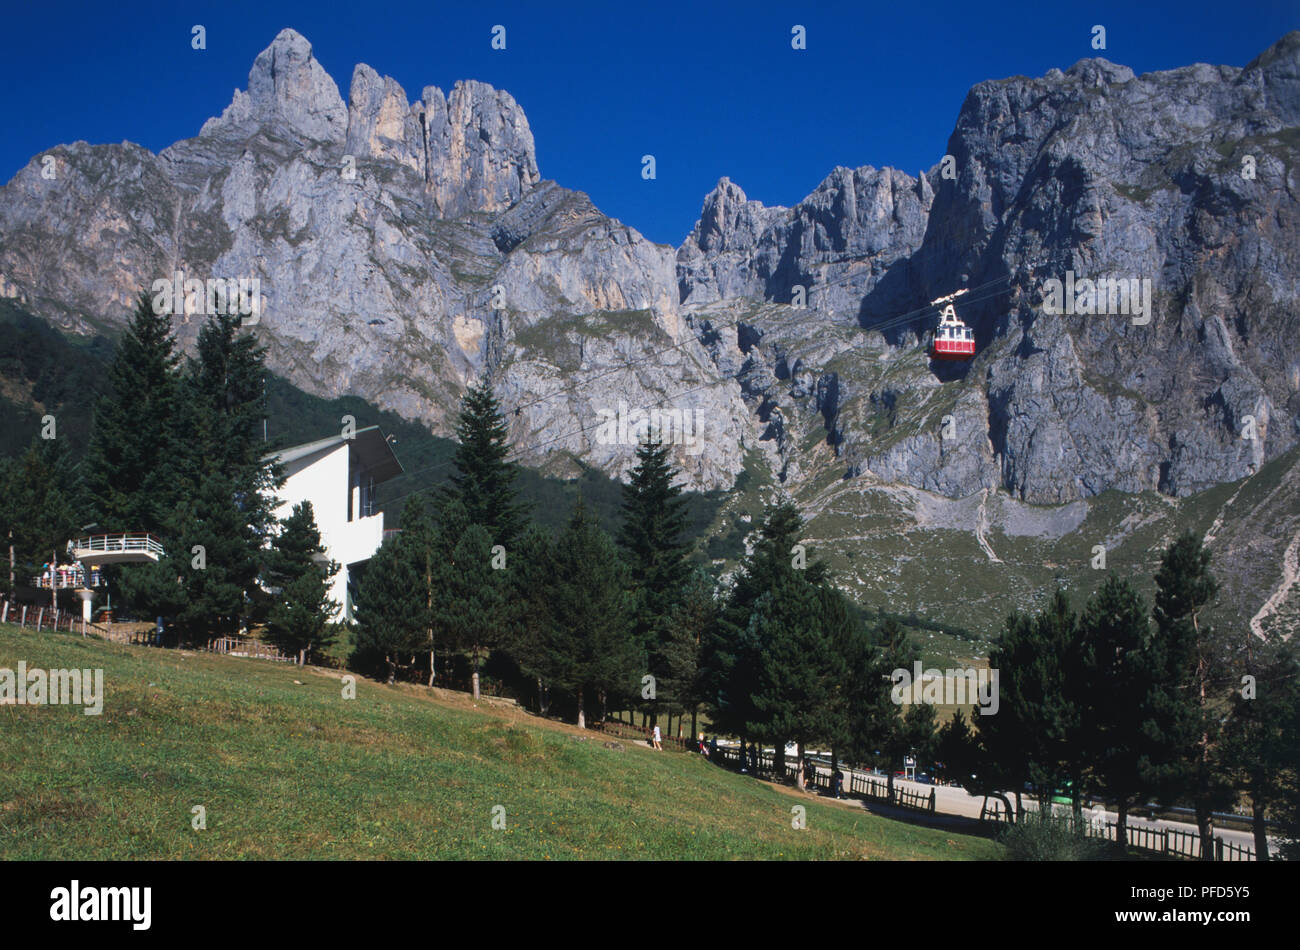 Spain, Cantabrian Mountains, los Picos de Europa, cable car Stock Photo